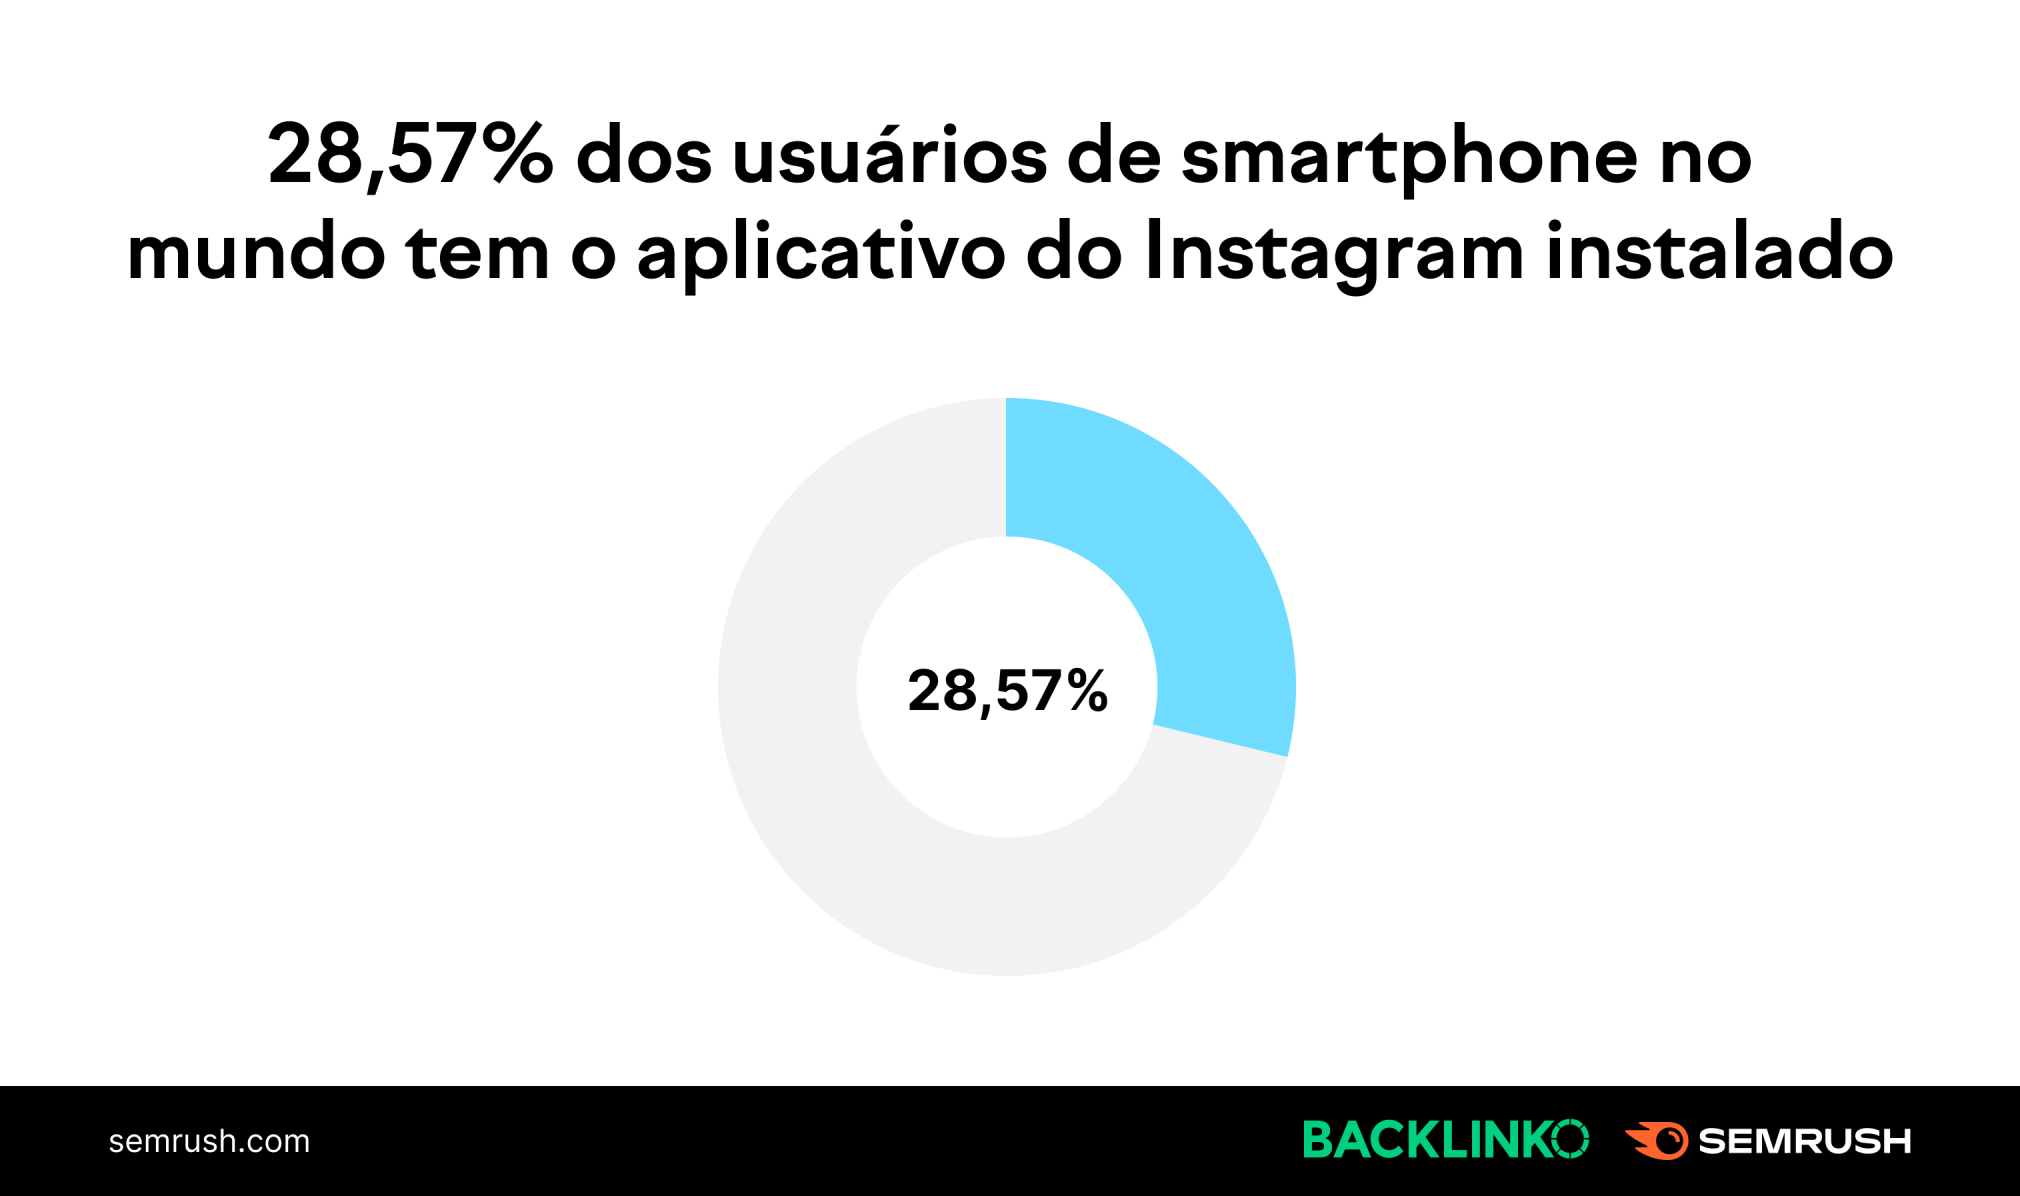 28,75% dos usuários de smartphones em todo o mundo tem o aplicativo do Instagram instalado